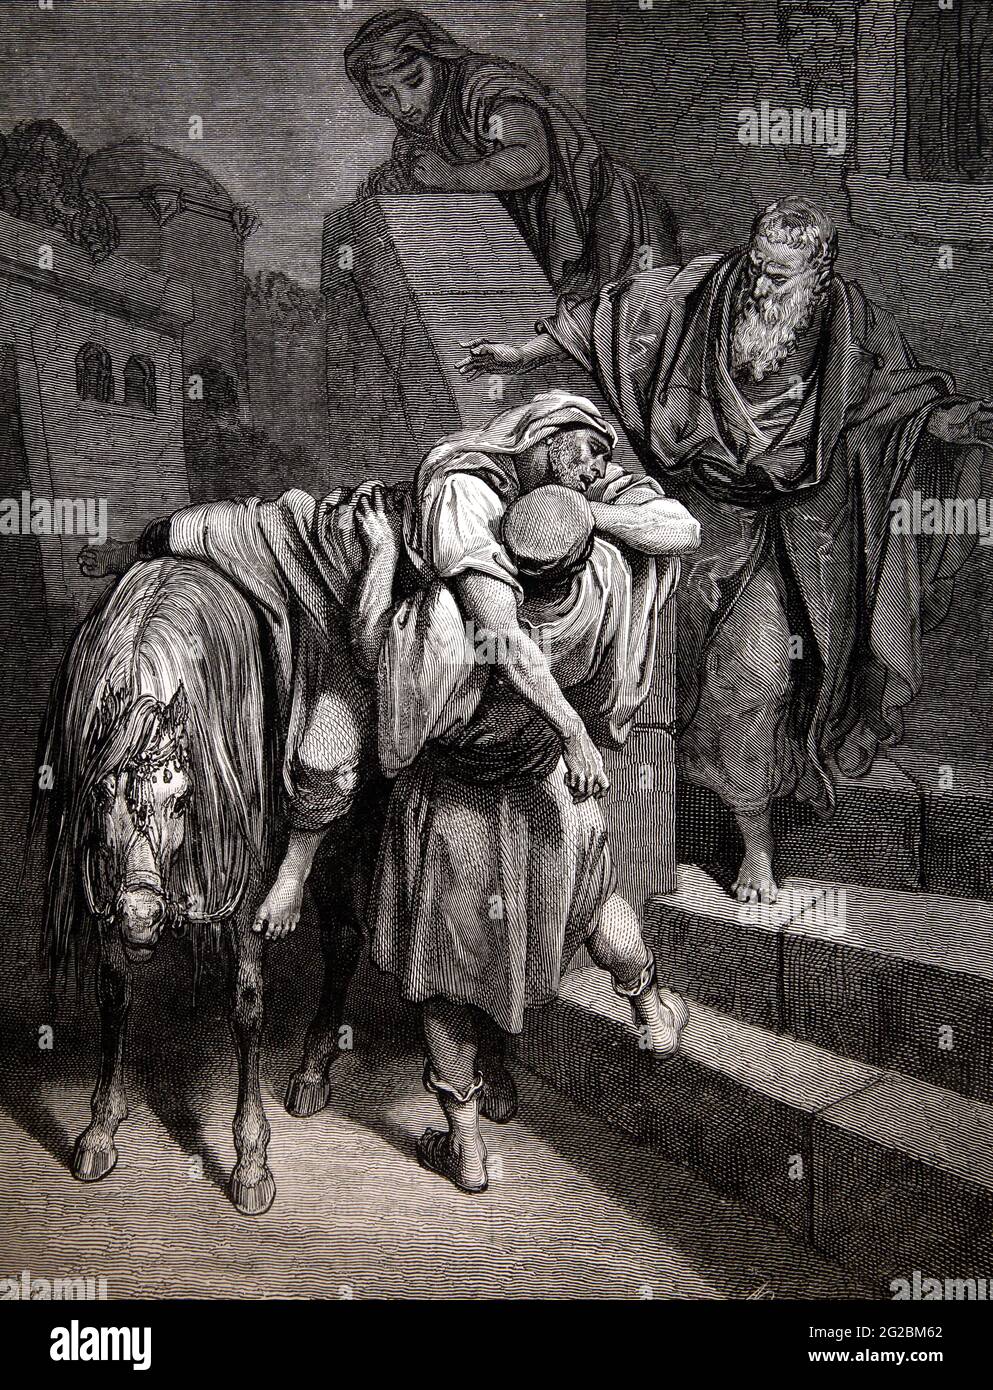 Historia Bíblica Ilustración de la 'Llegada del Buen Samaritano a la Posada' (Lucas 10:34-35) por Gustave Dore Foto de stock